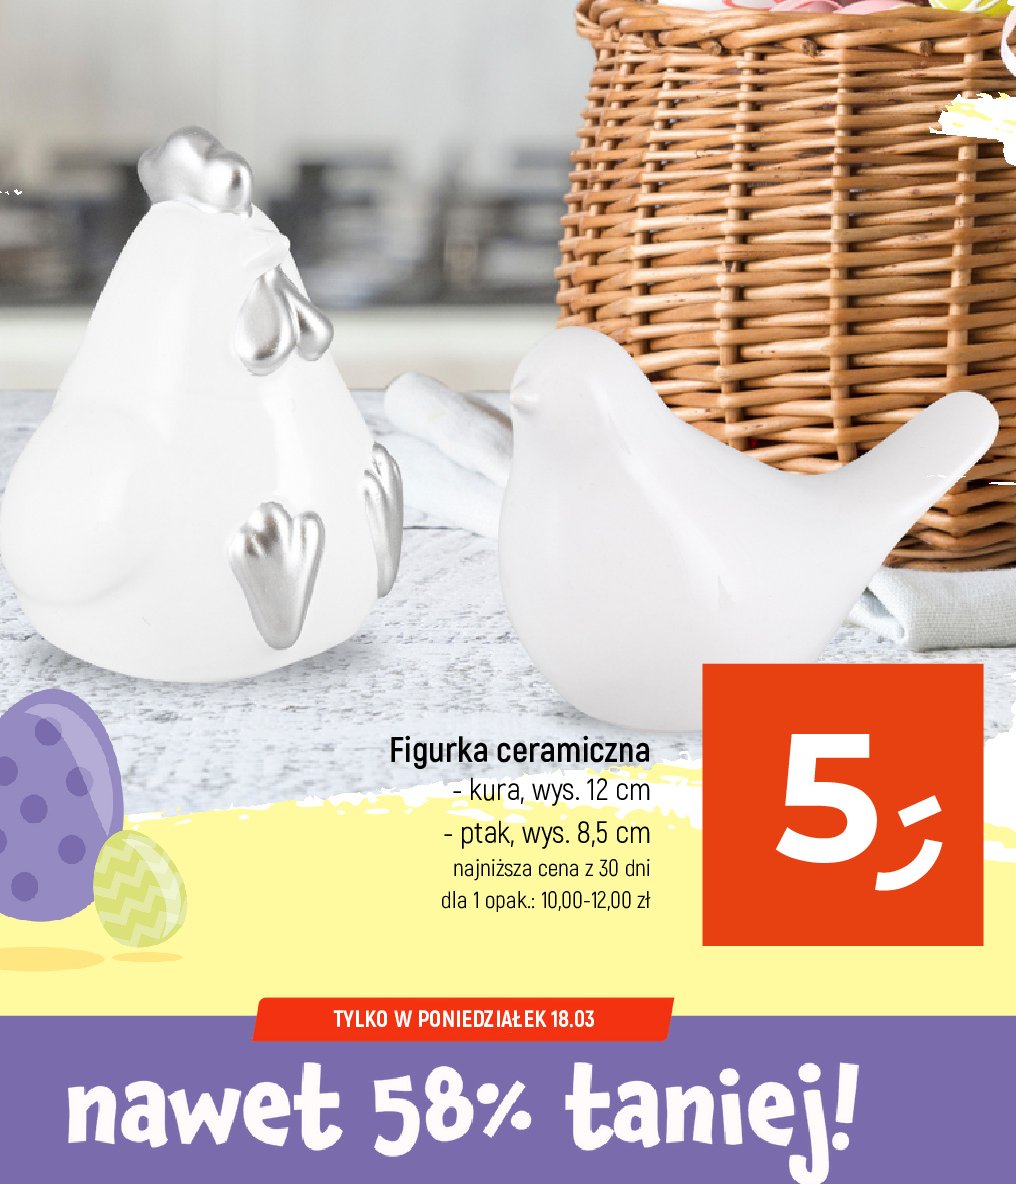 Figurka ceramiczna kura promocja